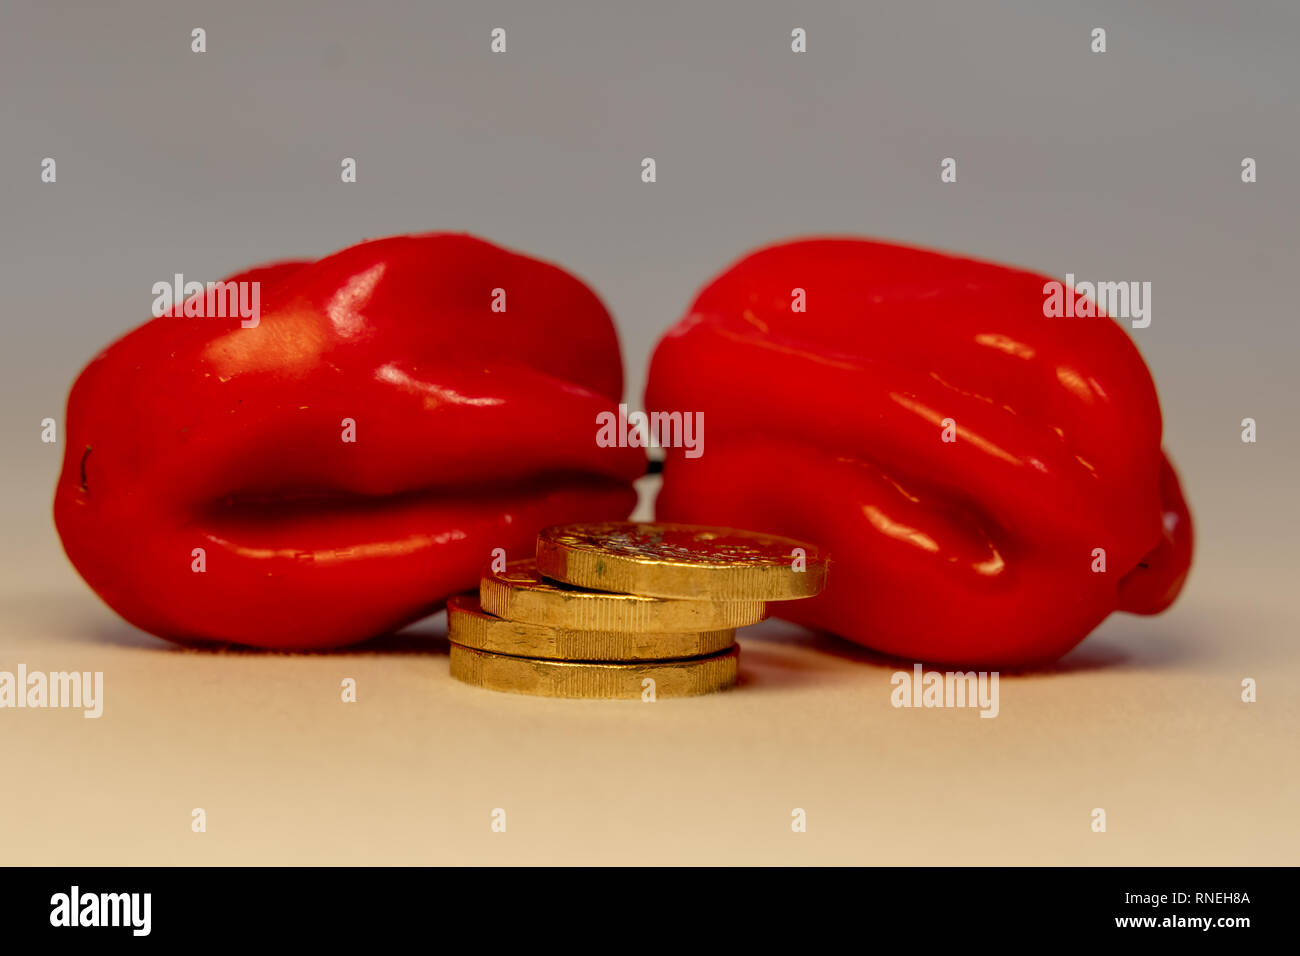 Ein Stapel von Shining Gold Münzen vor der Red Hot Habanero Paprika. Schnelle einfache oder heisses Geld Konzept. Stockfoto